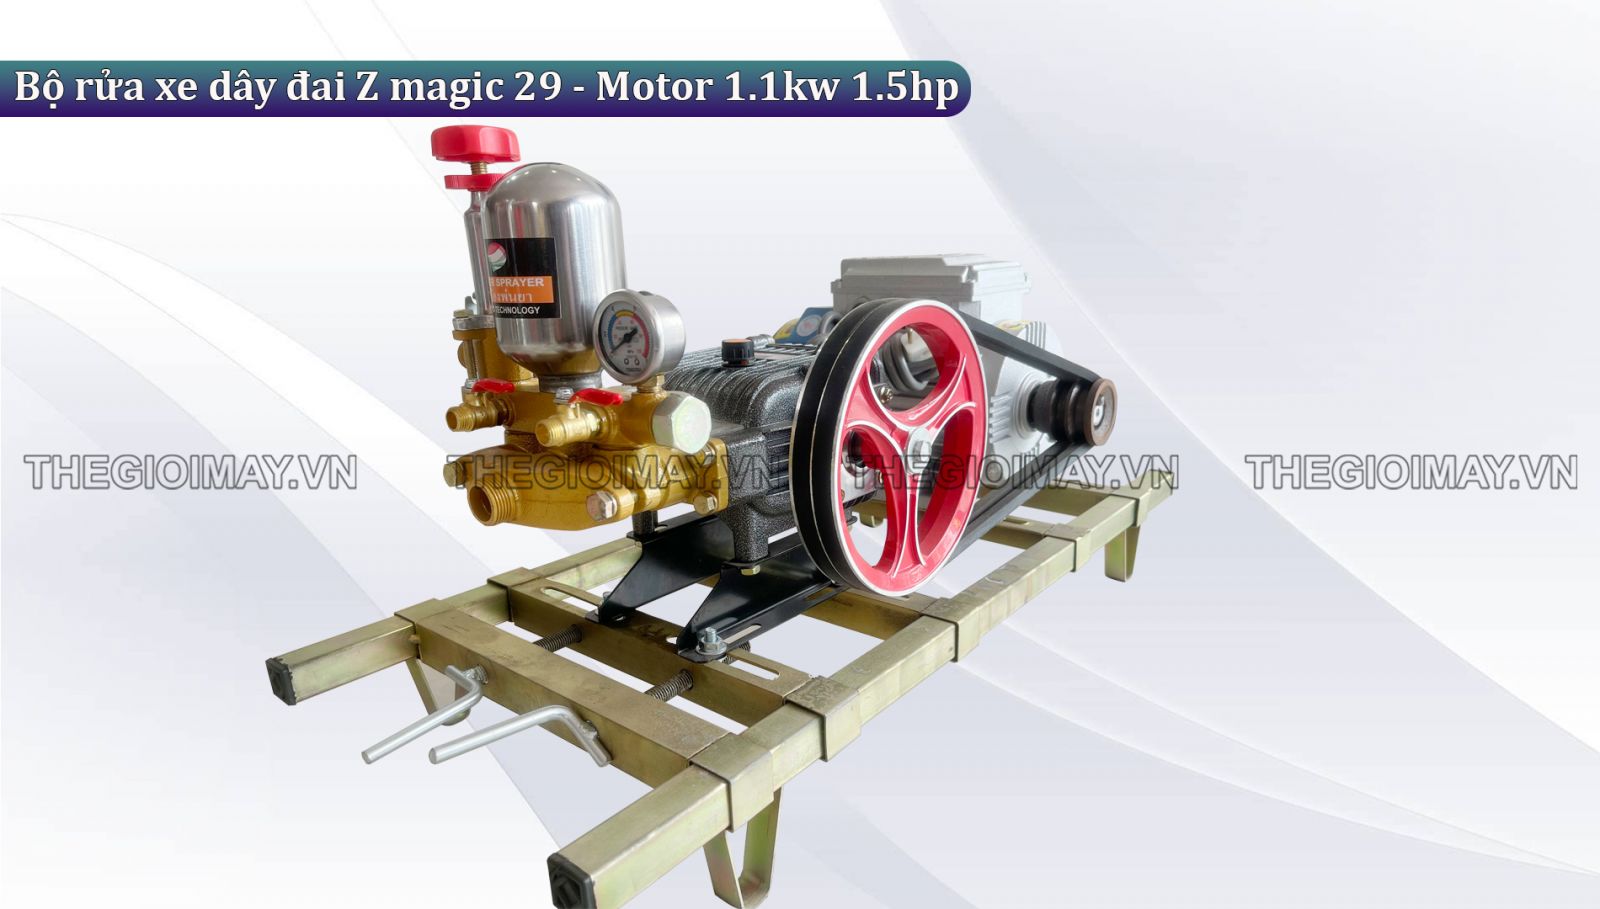 Nguyên lý hoạt động của bộ rửa xe dây đai Z magic 29 - Motor 1.1kw 1.5hp